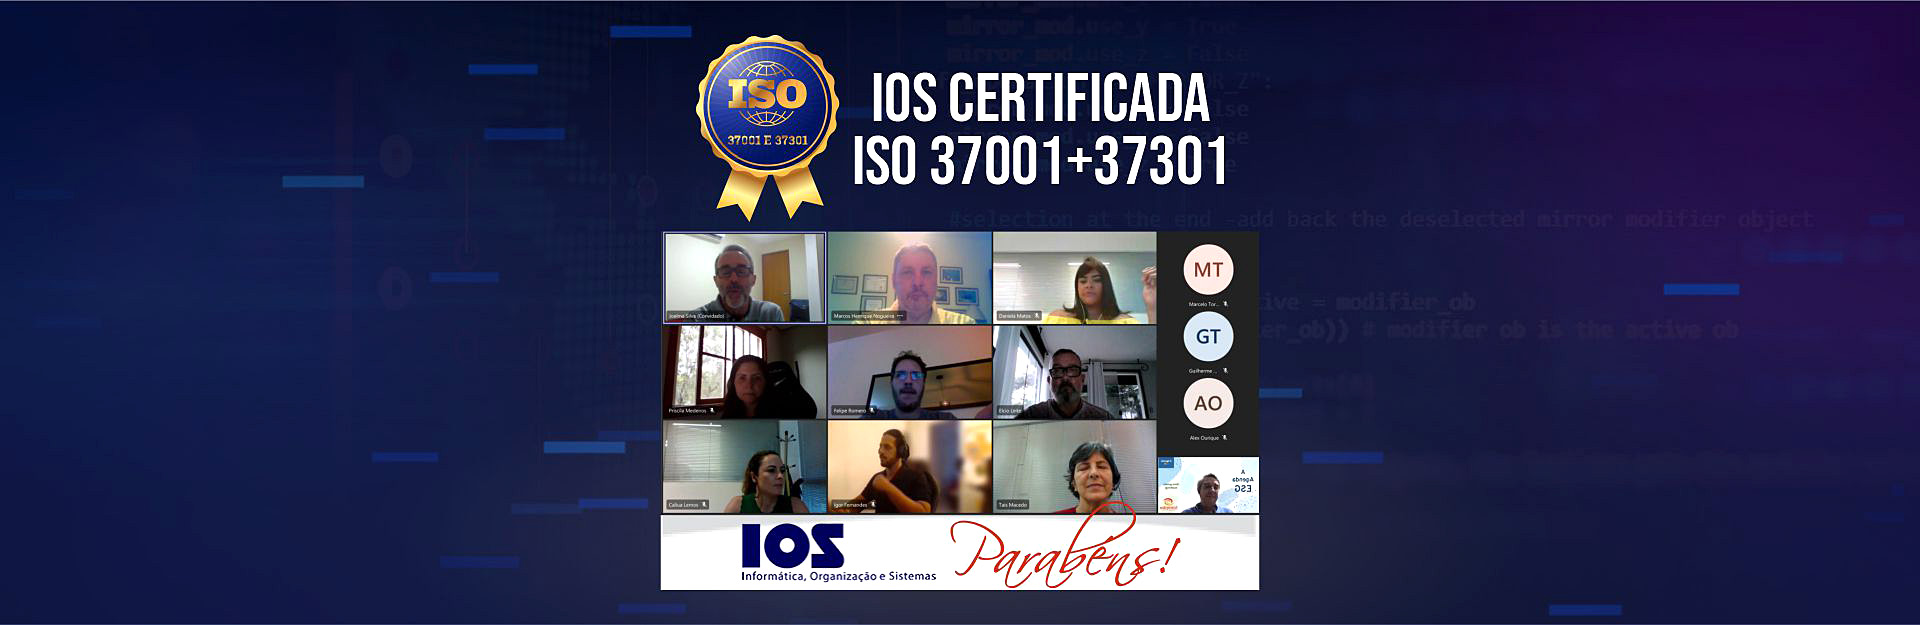 ios-certifica-iso-37001-37301